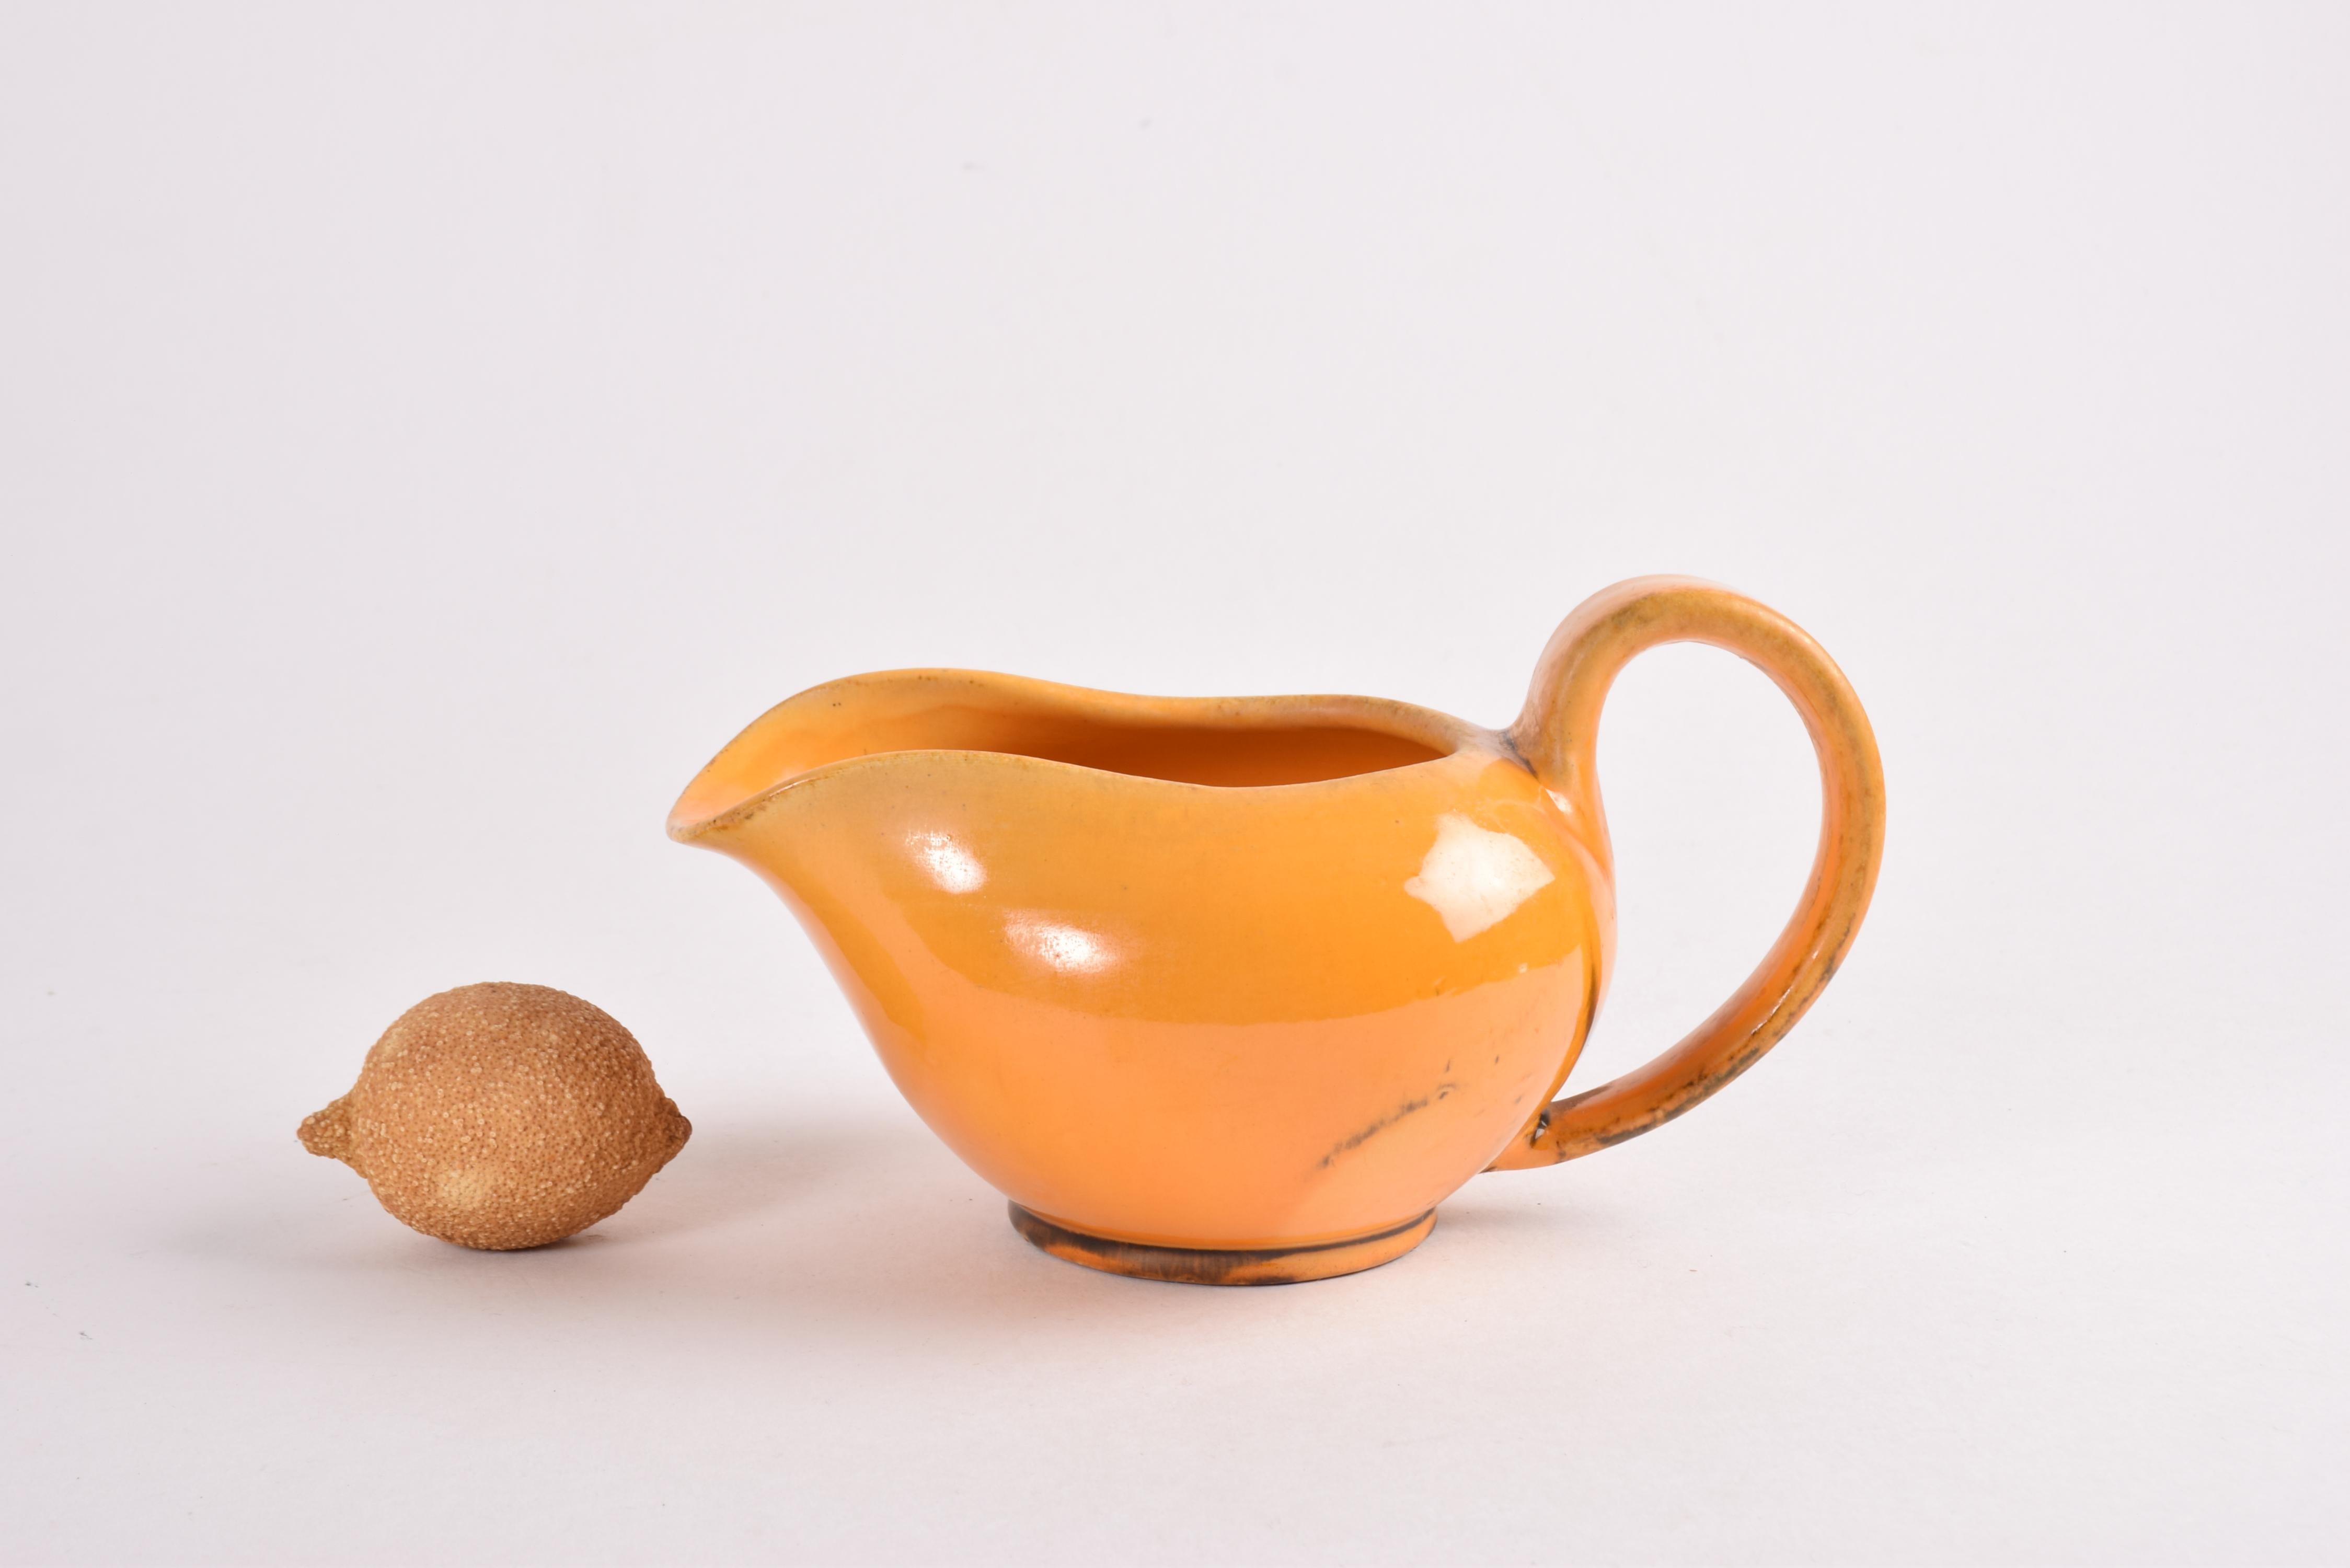 Pichet ou cruche en céramique Art déco conçu par Nils Kähler et fabriqué par l'atelier de céramique Herman A. Kähler dans les années 1930 ou 1940.
La cruche est décorée d'une glaçure jaune uranium chaude avec des éléments bruns. 

Signé sous le bas